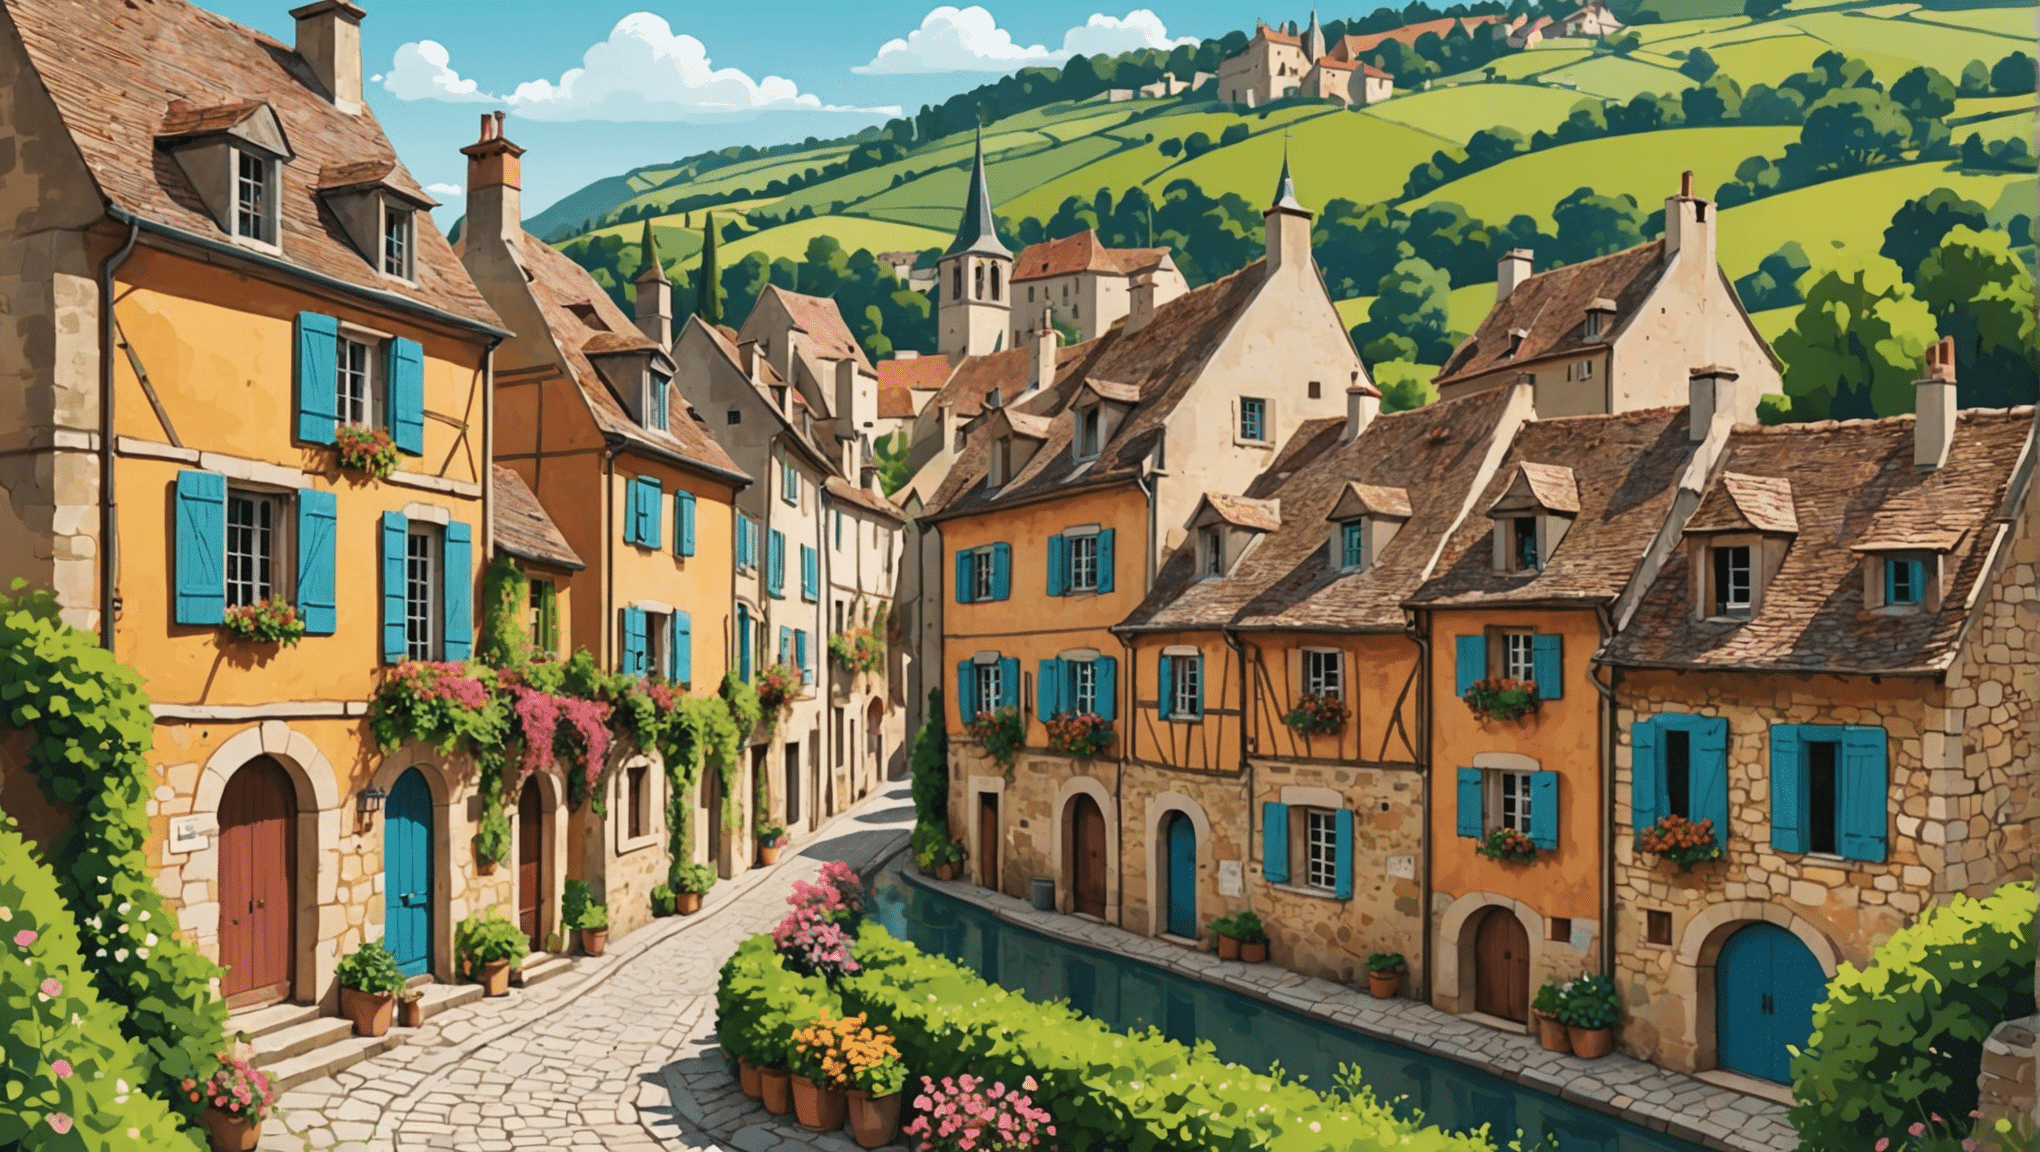 हमारे आवश्यक चयन के माध्यम से फ्रांस के सबसे खूबसूरत गांवों की खोज करें। एक प्रामाणिक और सुरम्य छुट्टी के लिए अवश्य जाएँ।